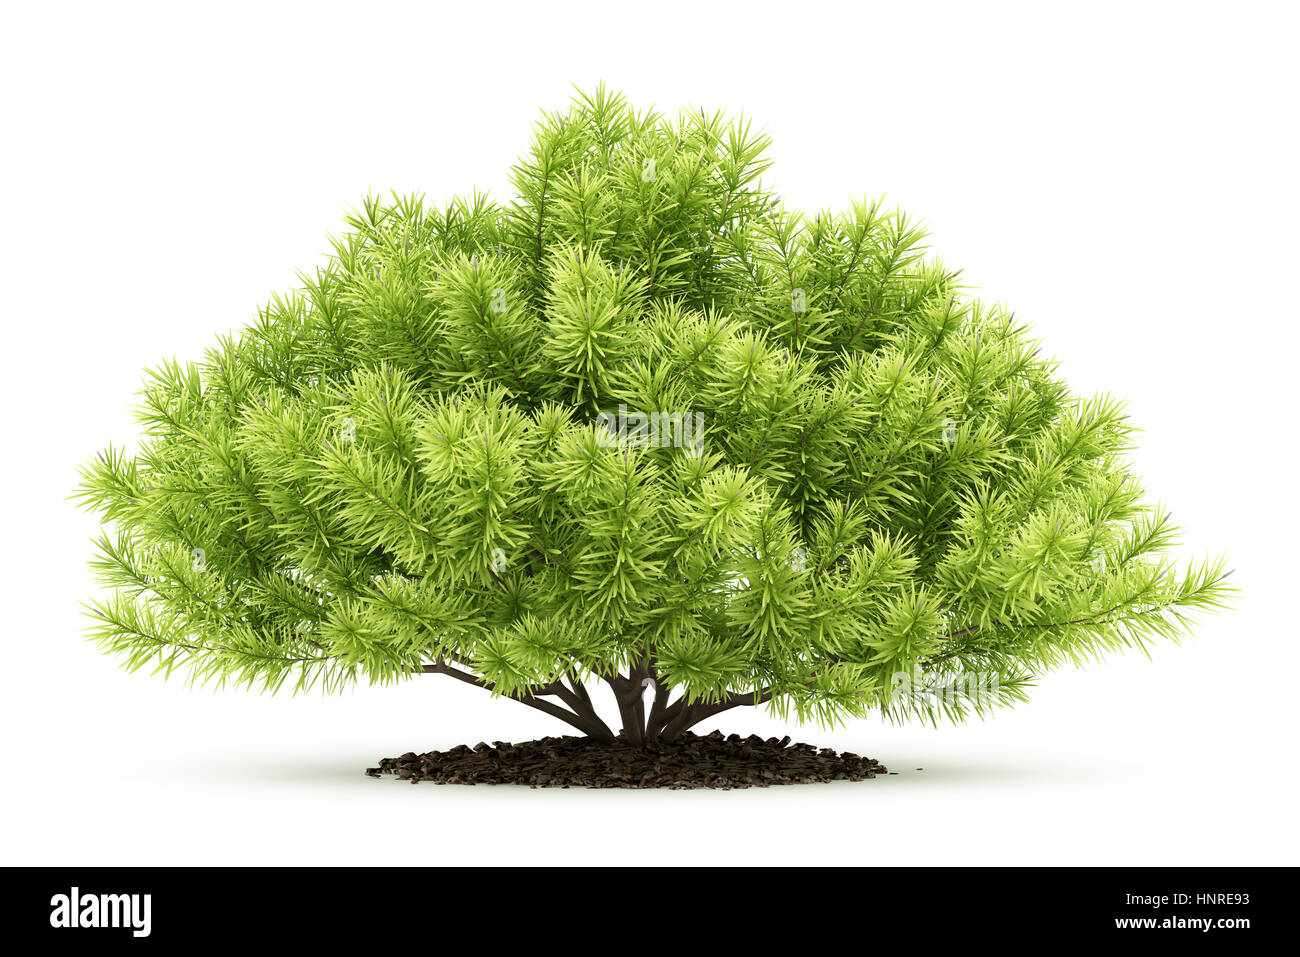 pine shrub plant isolated on white background. 3d illustration Stock Photo